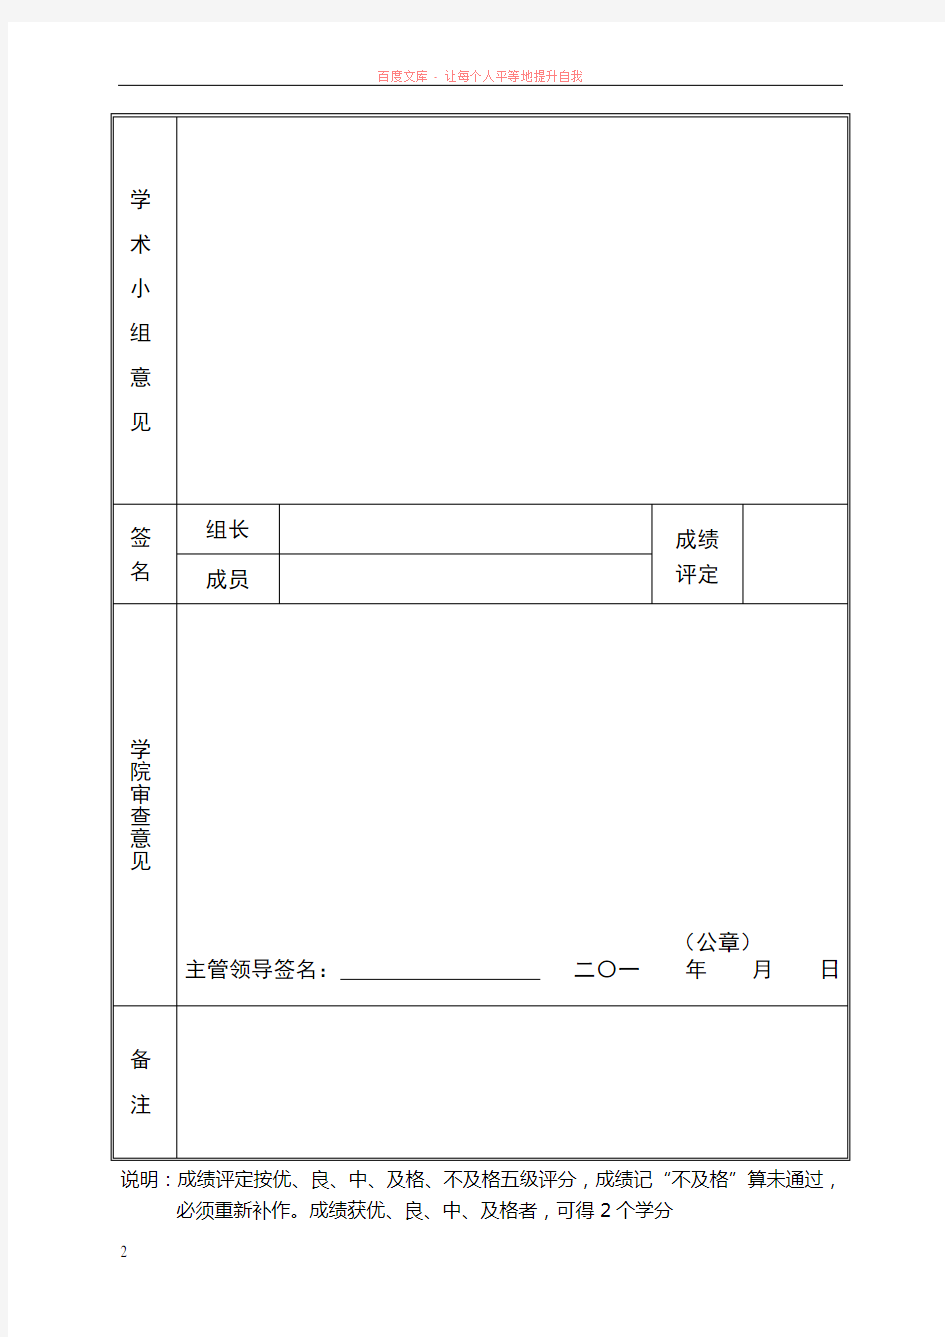 湖南大学硕士研究生学术活动考核表1份(a4双面打印)